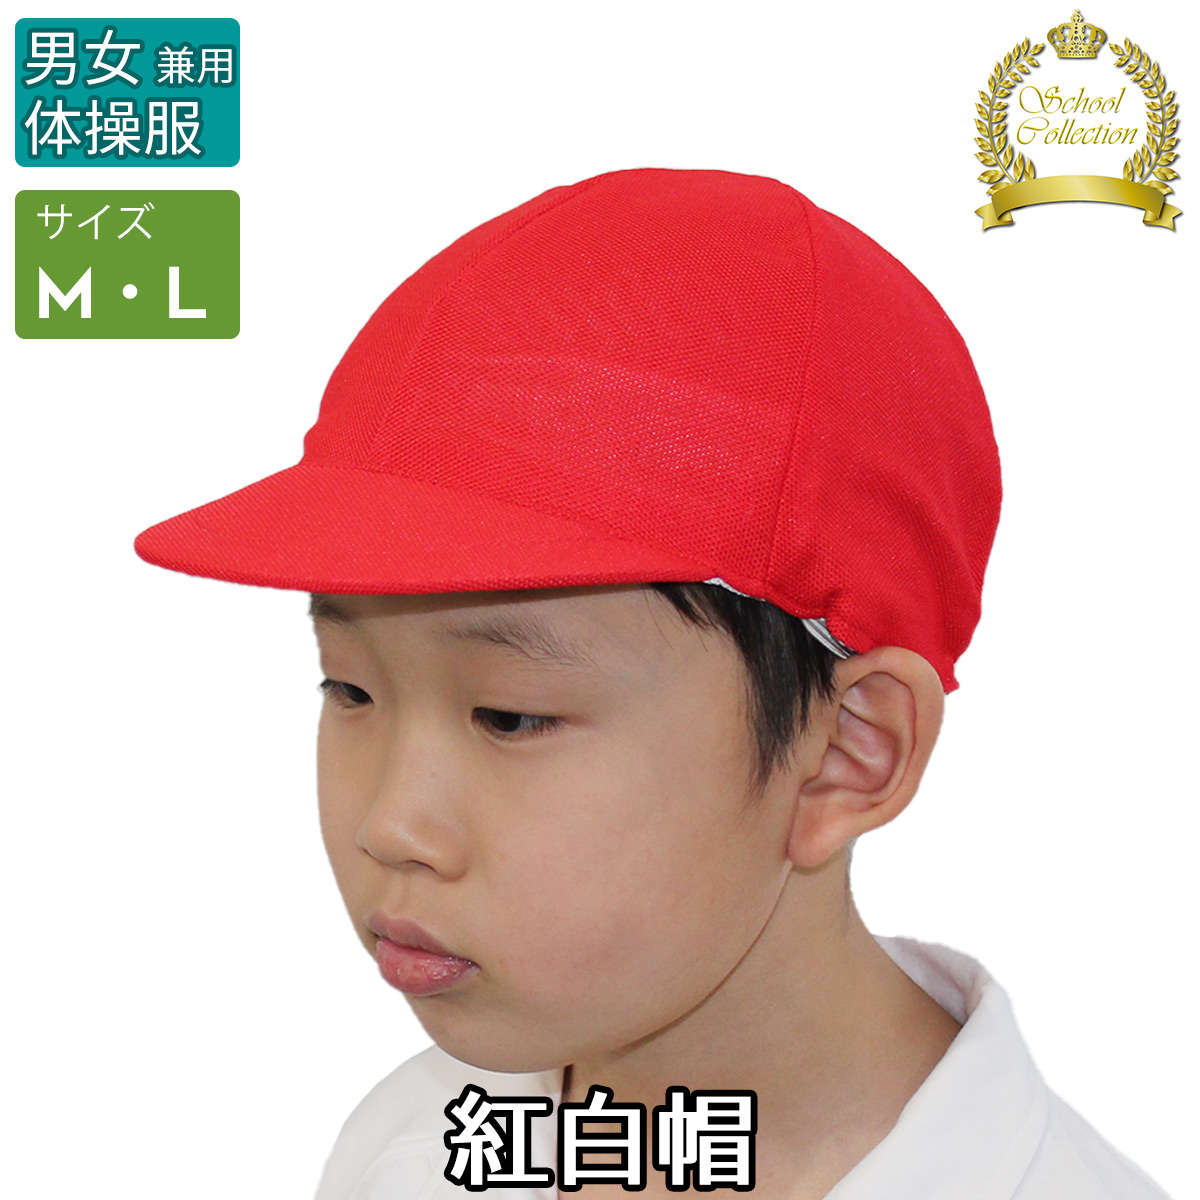 紅白帽子 メッシュ つば付き帽子 ネームタグ付き 赤白帽子 紅白帽 12500 M 4wKSKXeELg 